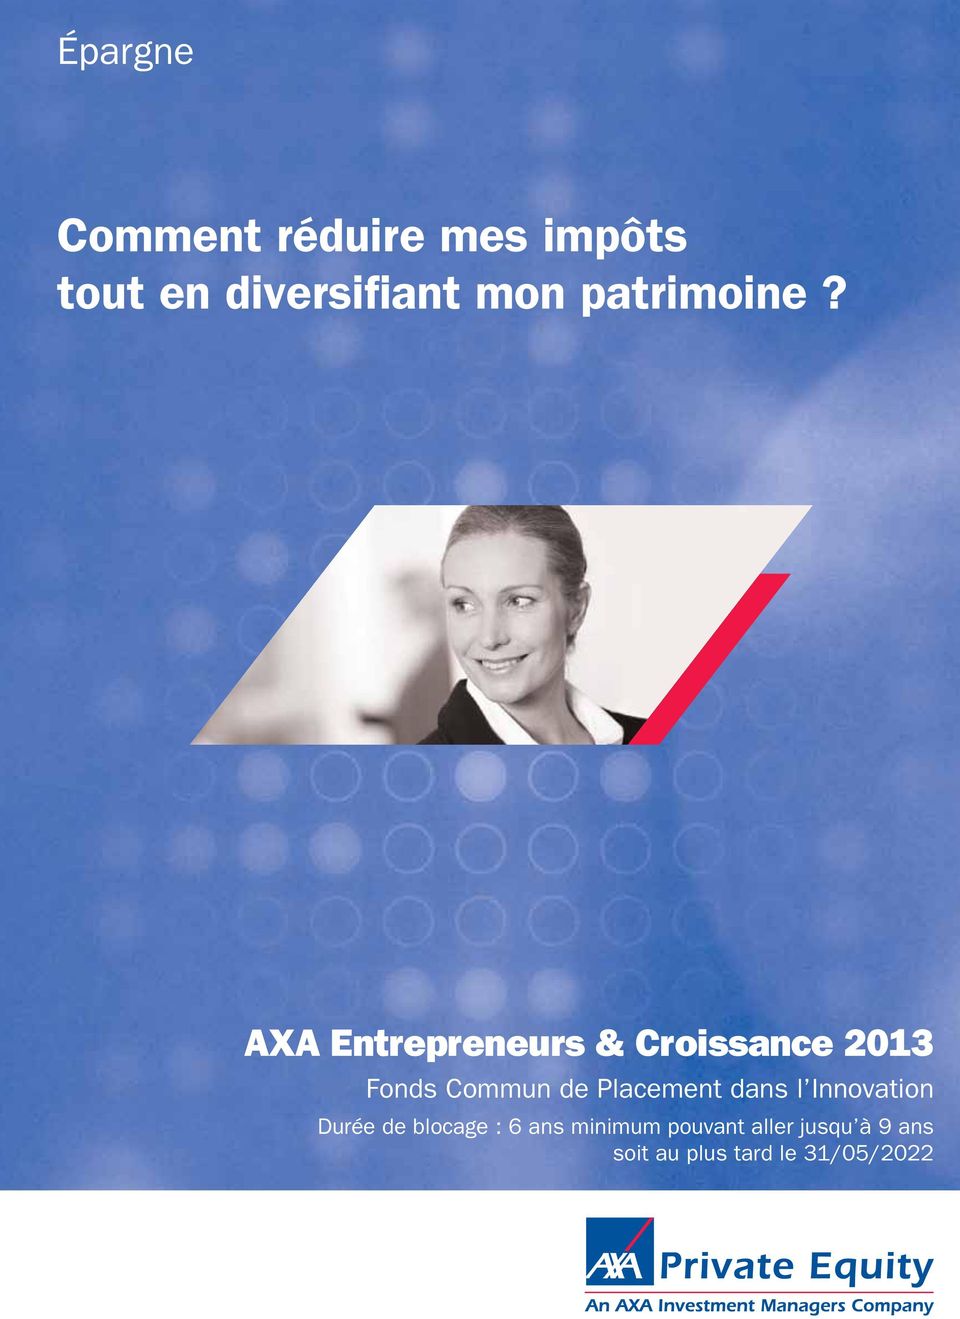 AXA Entrepreneurs & Croissance 2013 Fonds Commun de